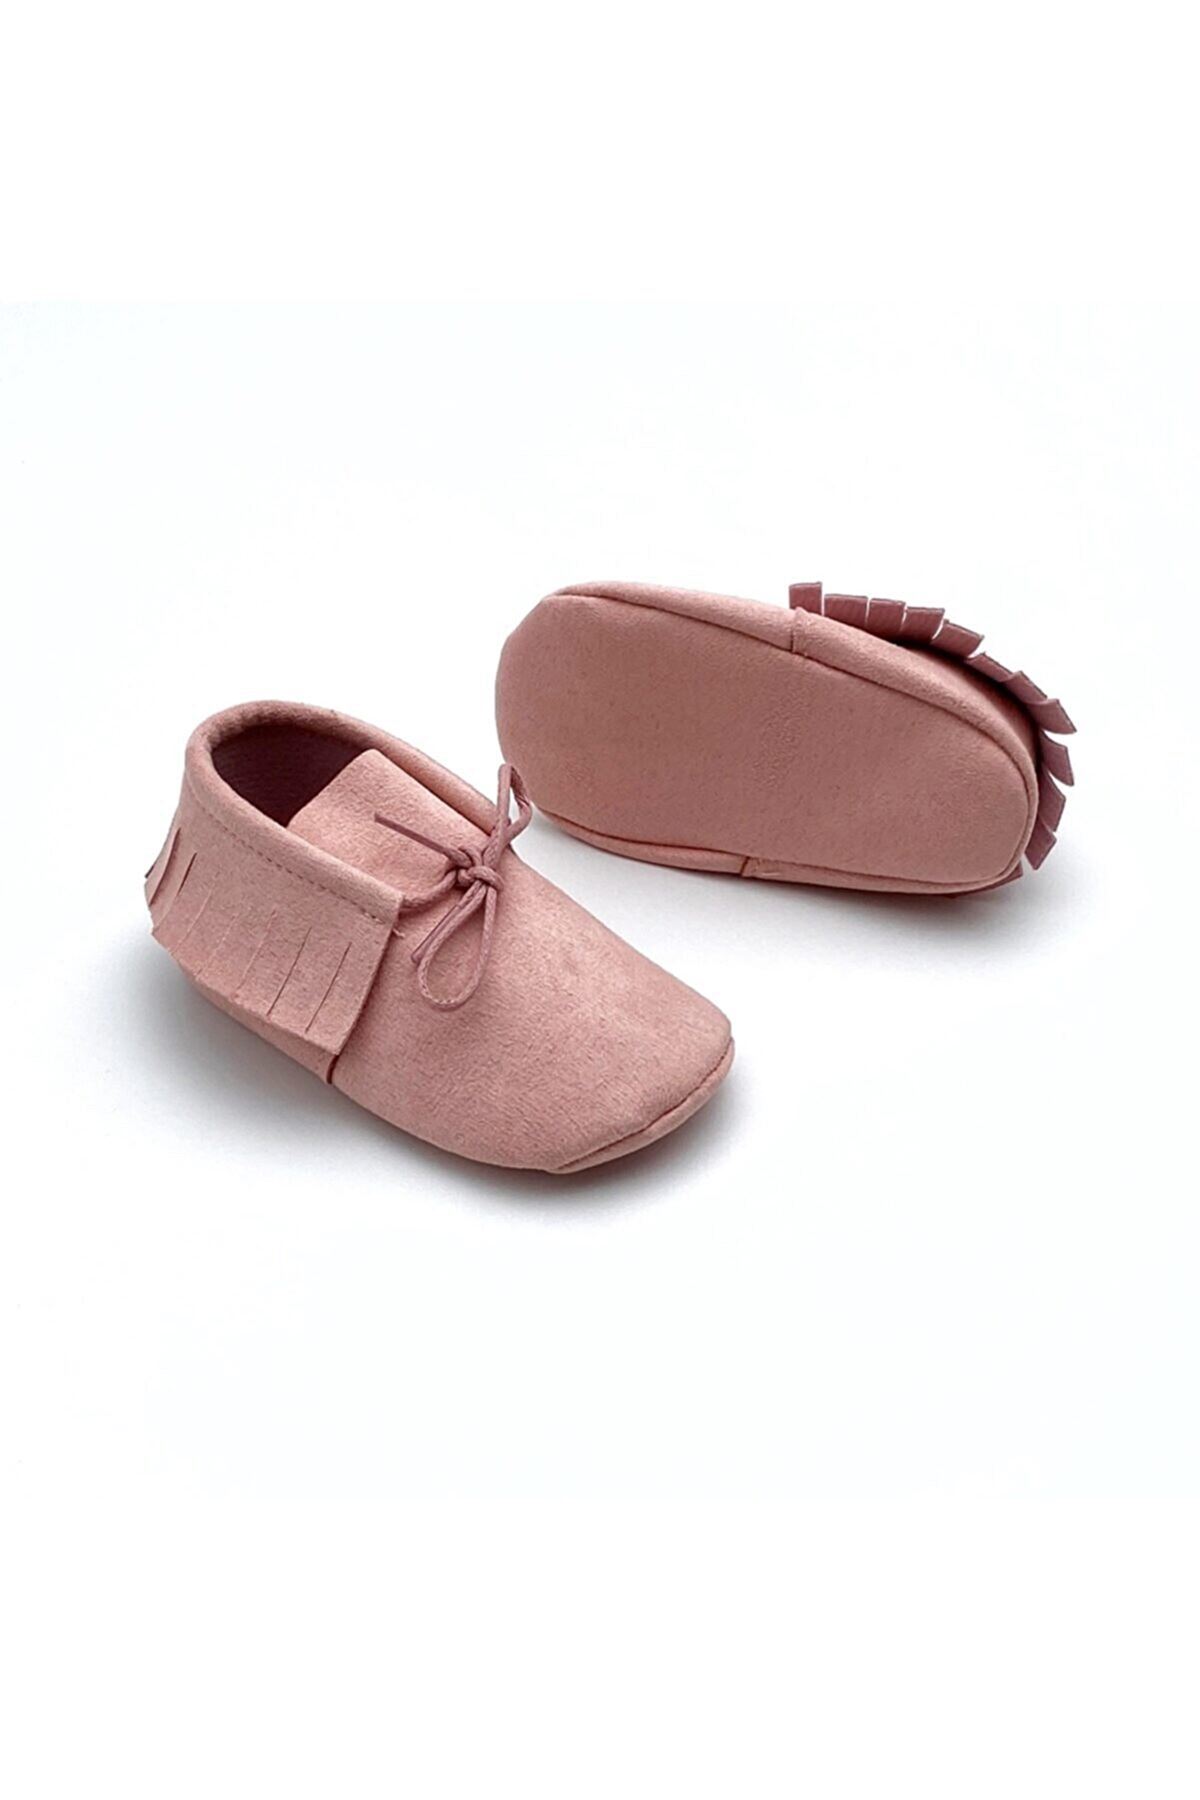 Baby Tuğra Elyapımı Bağcıklı Nubuk Makosen Patik Bebek Ayakkabı-Pembe